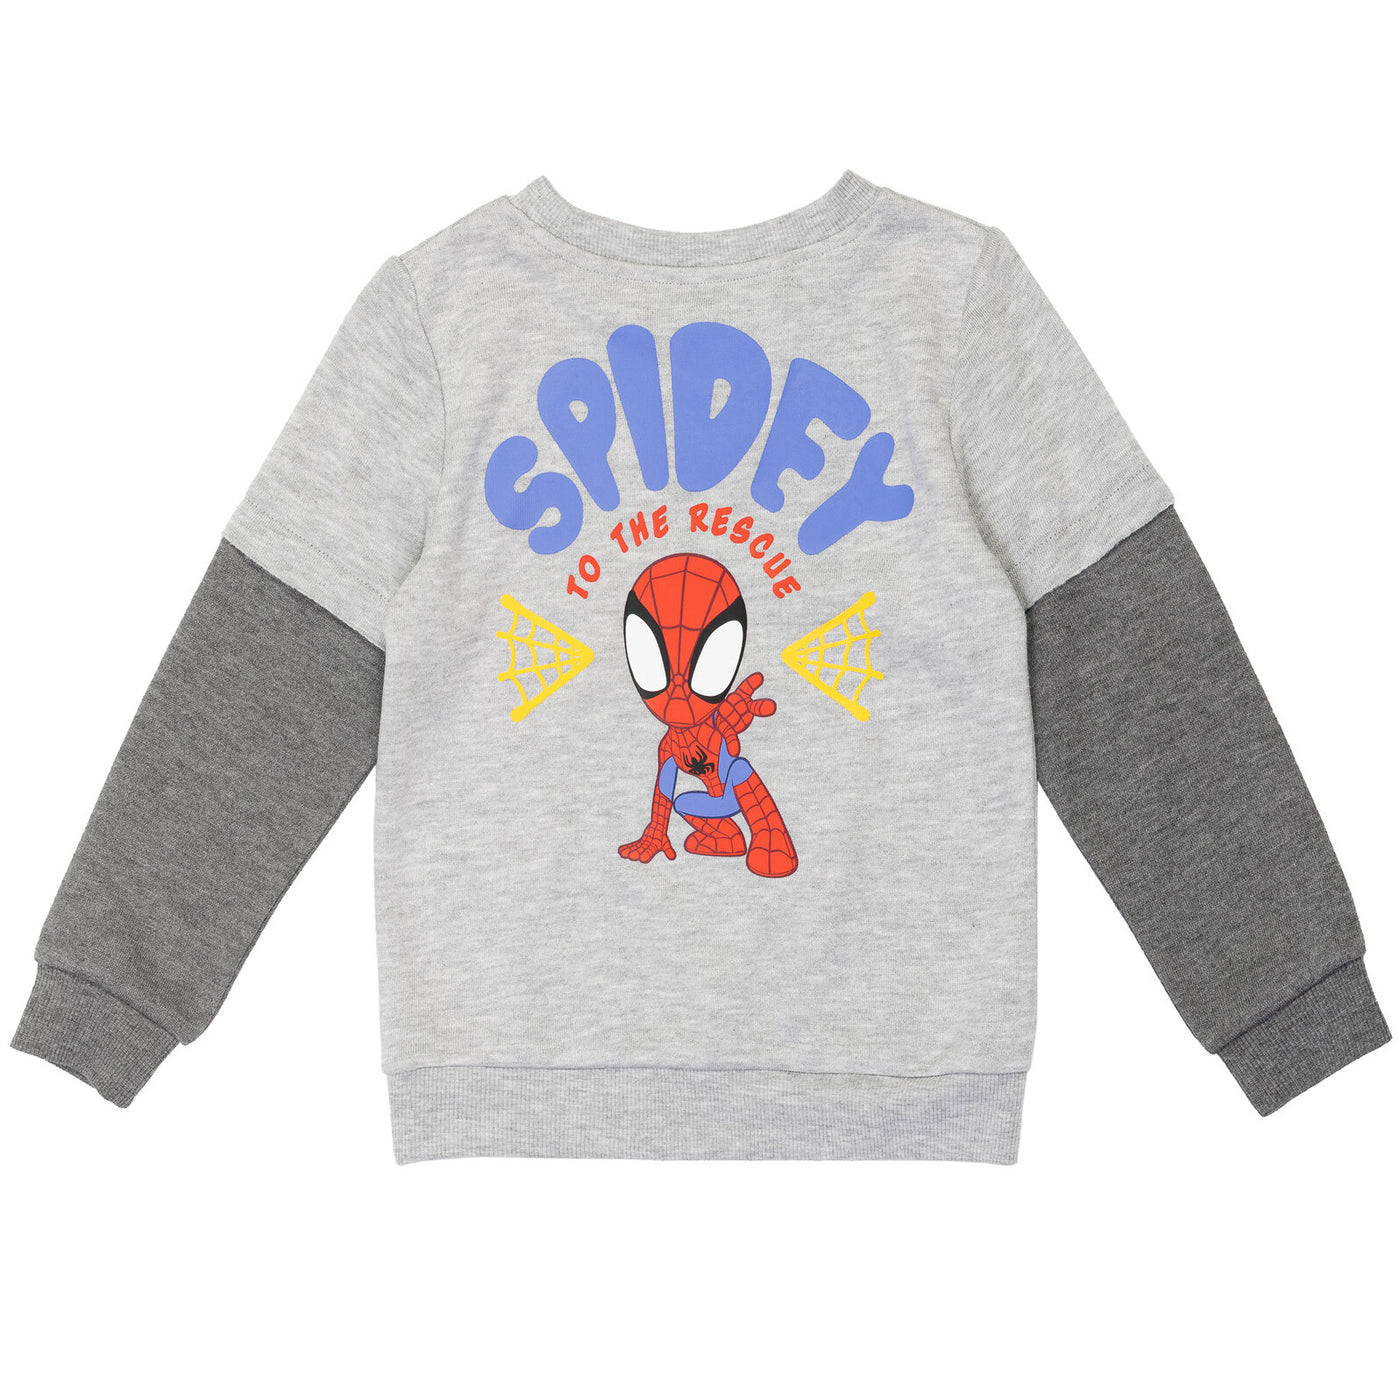 Conjunto de camiseta y pantalones de chándal de Marvel Spidey and His Amazing Friends